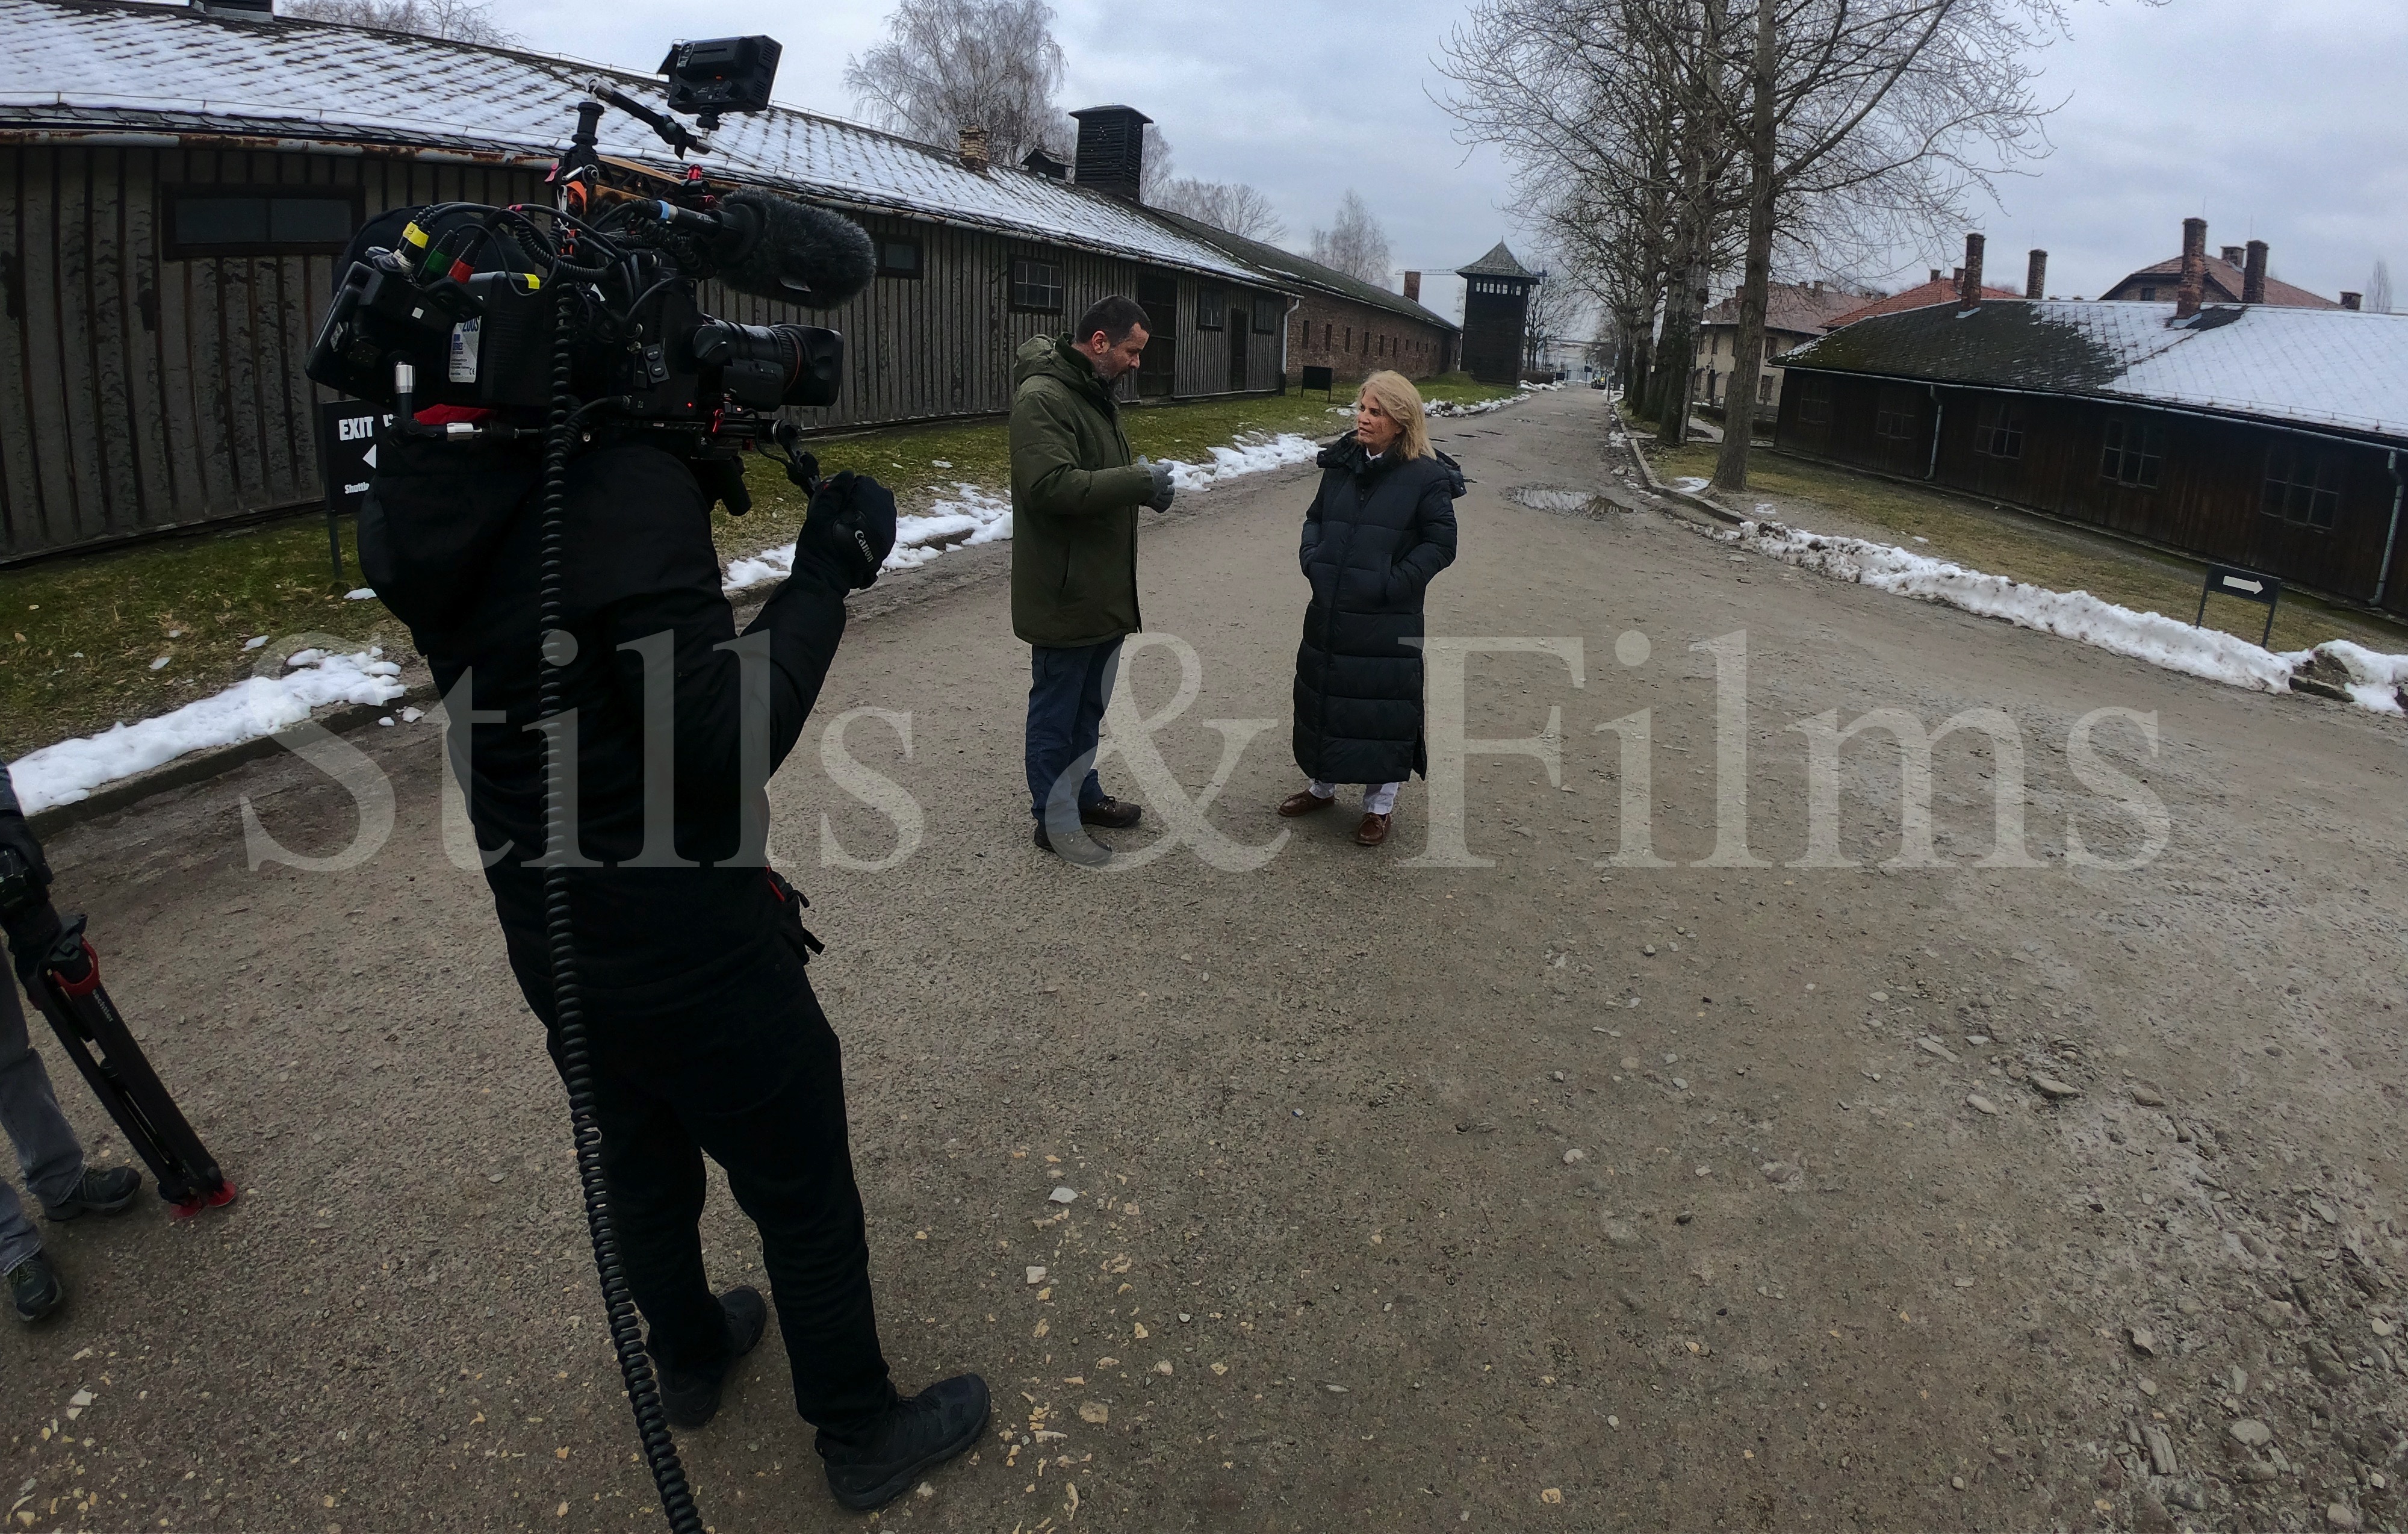 Filming in Auschwitz, Poland